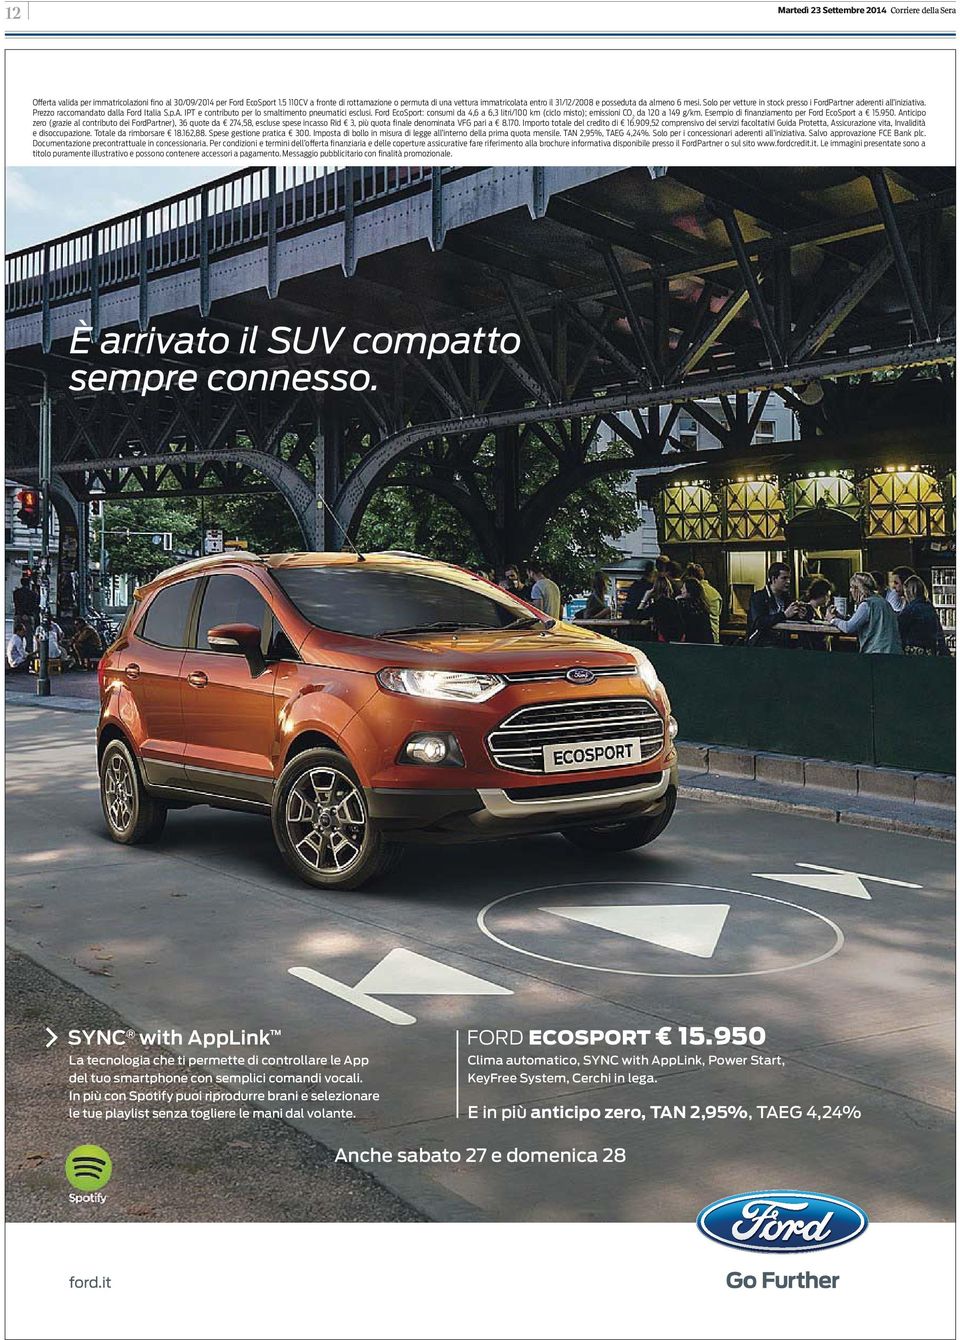 Prezzo raccomandato dalla Ford Italia S.p.A. IPT e contributo per lo smaltimento pneumatici esclusi. Ford EcoSport: consumi da 4,6 a 6,3 litri/100 km (ciclo misto); emissioni CO 2 da 120 a 149 g/km.